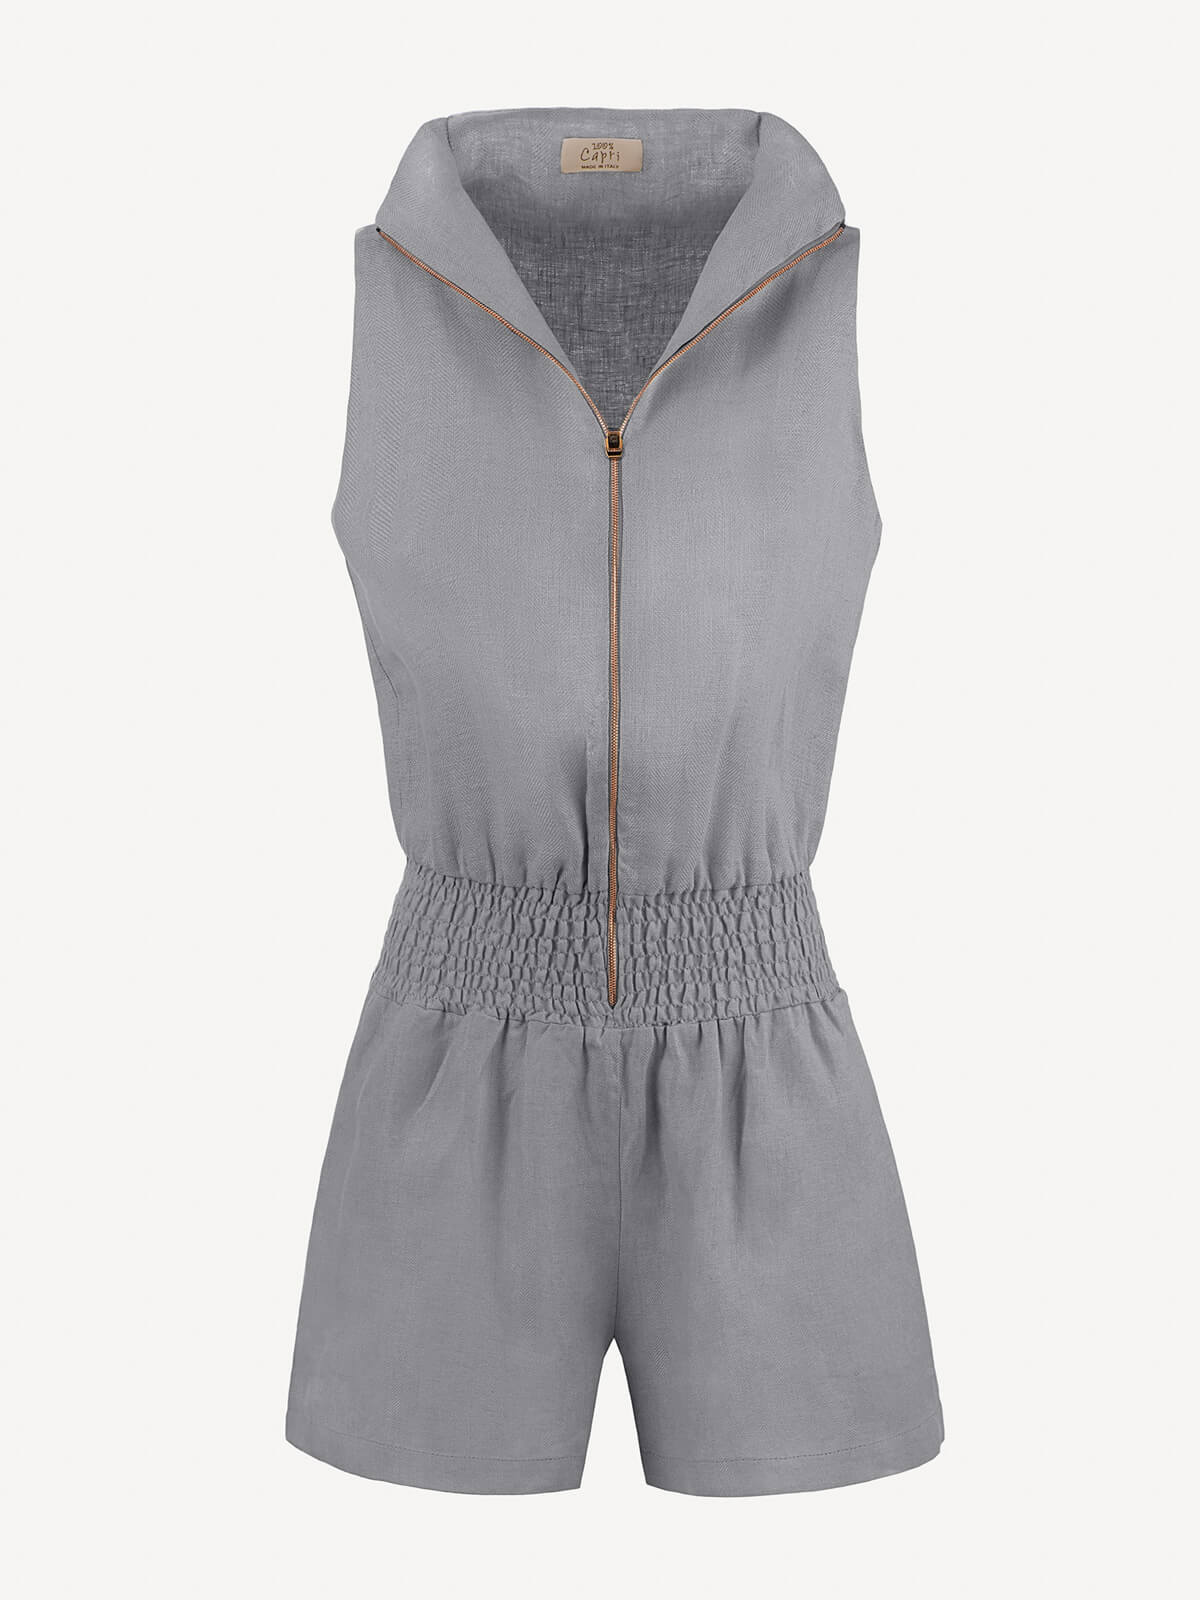 Tuta Zip  for woman 100% Capri dark grey linen jumpsuit front